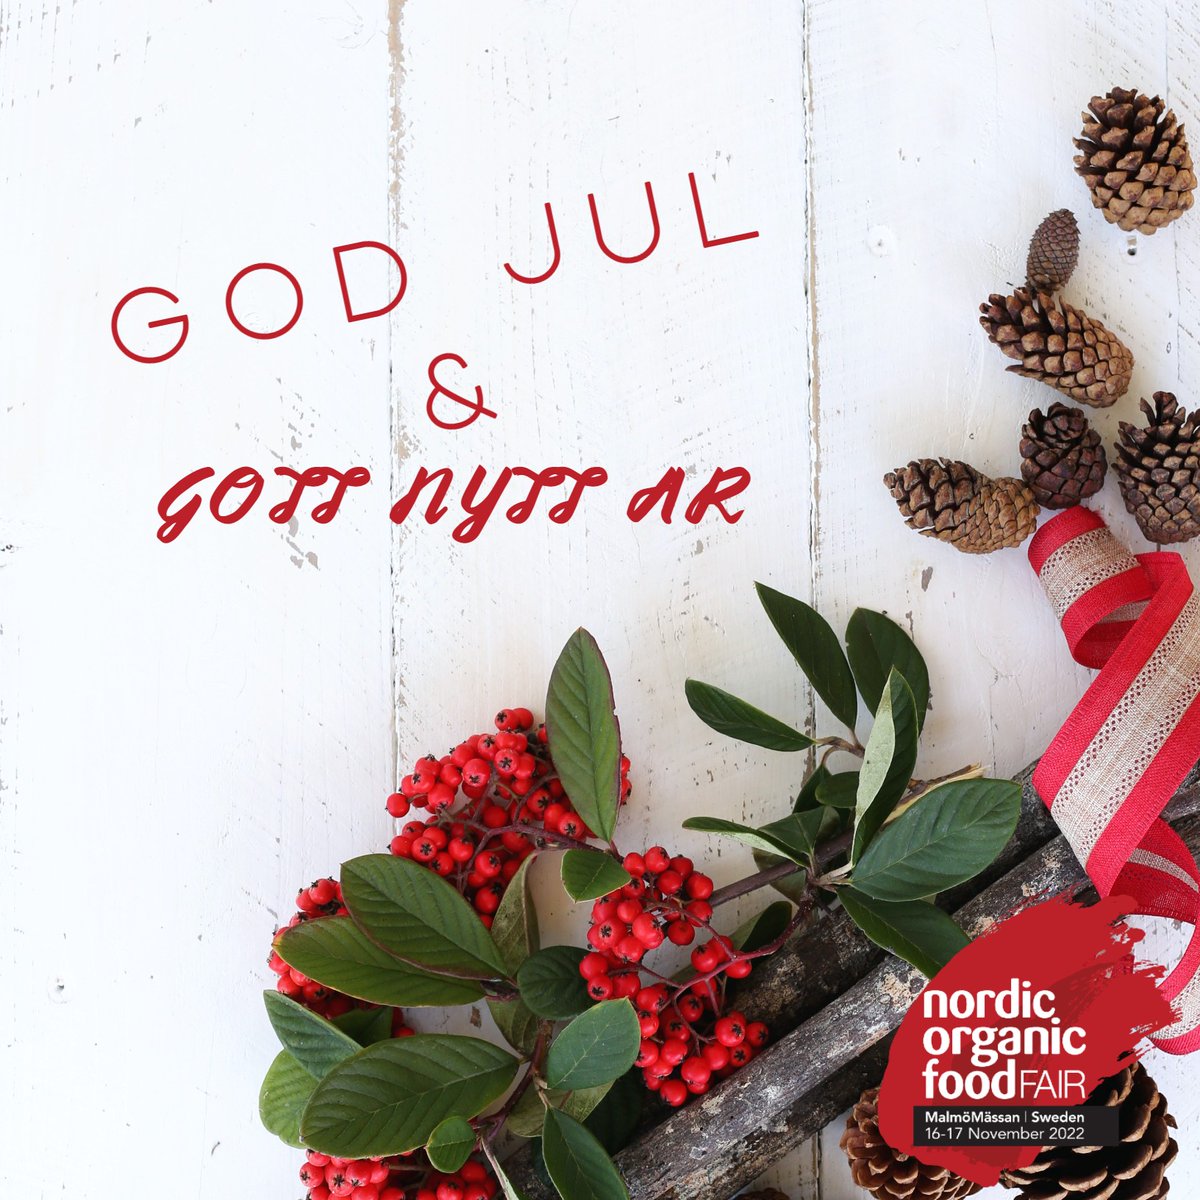 🎄God Jul och Gott Nytt År önskar hela teamet från Nordic Organic Food Fair! 🎄 https://t.co/0gycLyldIh